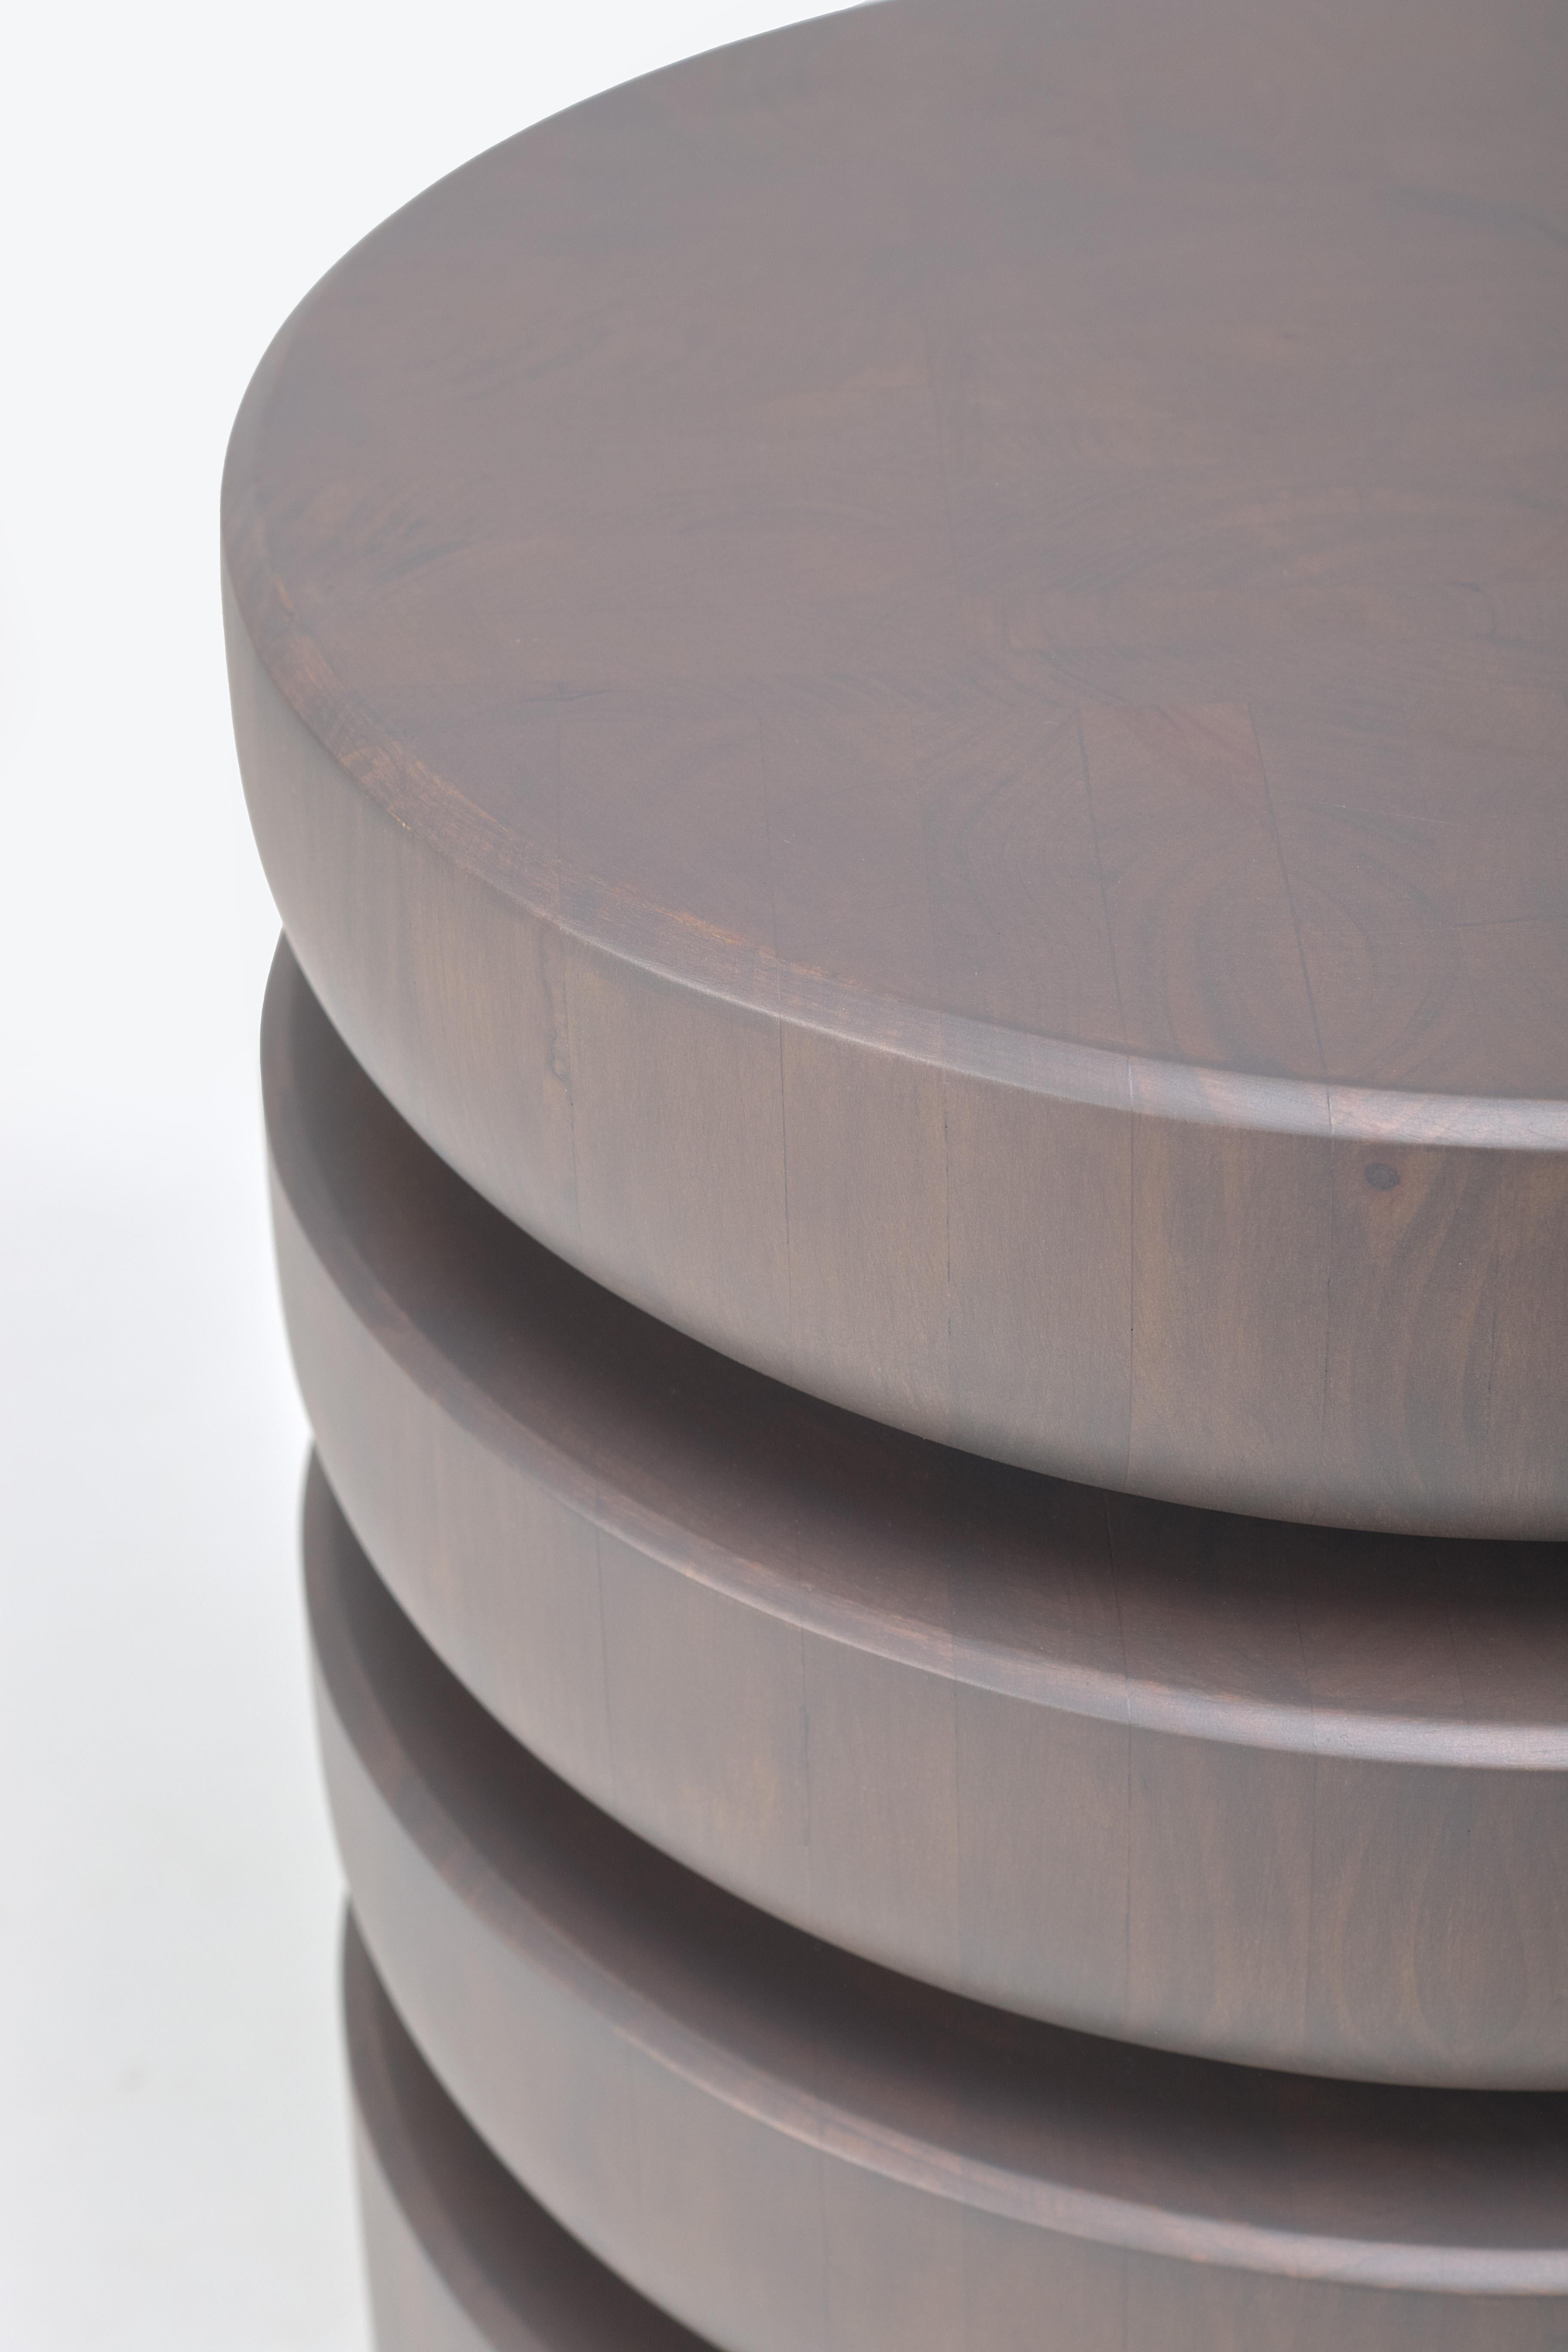 Réjouissez-vous du charme rustique de notre table Barro sculptée à la main, un hommage étonnant à l'héritage artisanal de la région de Chinautla au Guatemala. Habilement conçue pour reproduire l'apparence des pots et plateaux en terre cuite empilés,